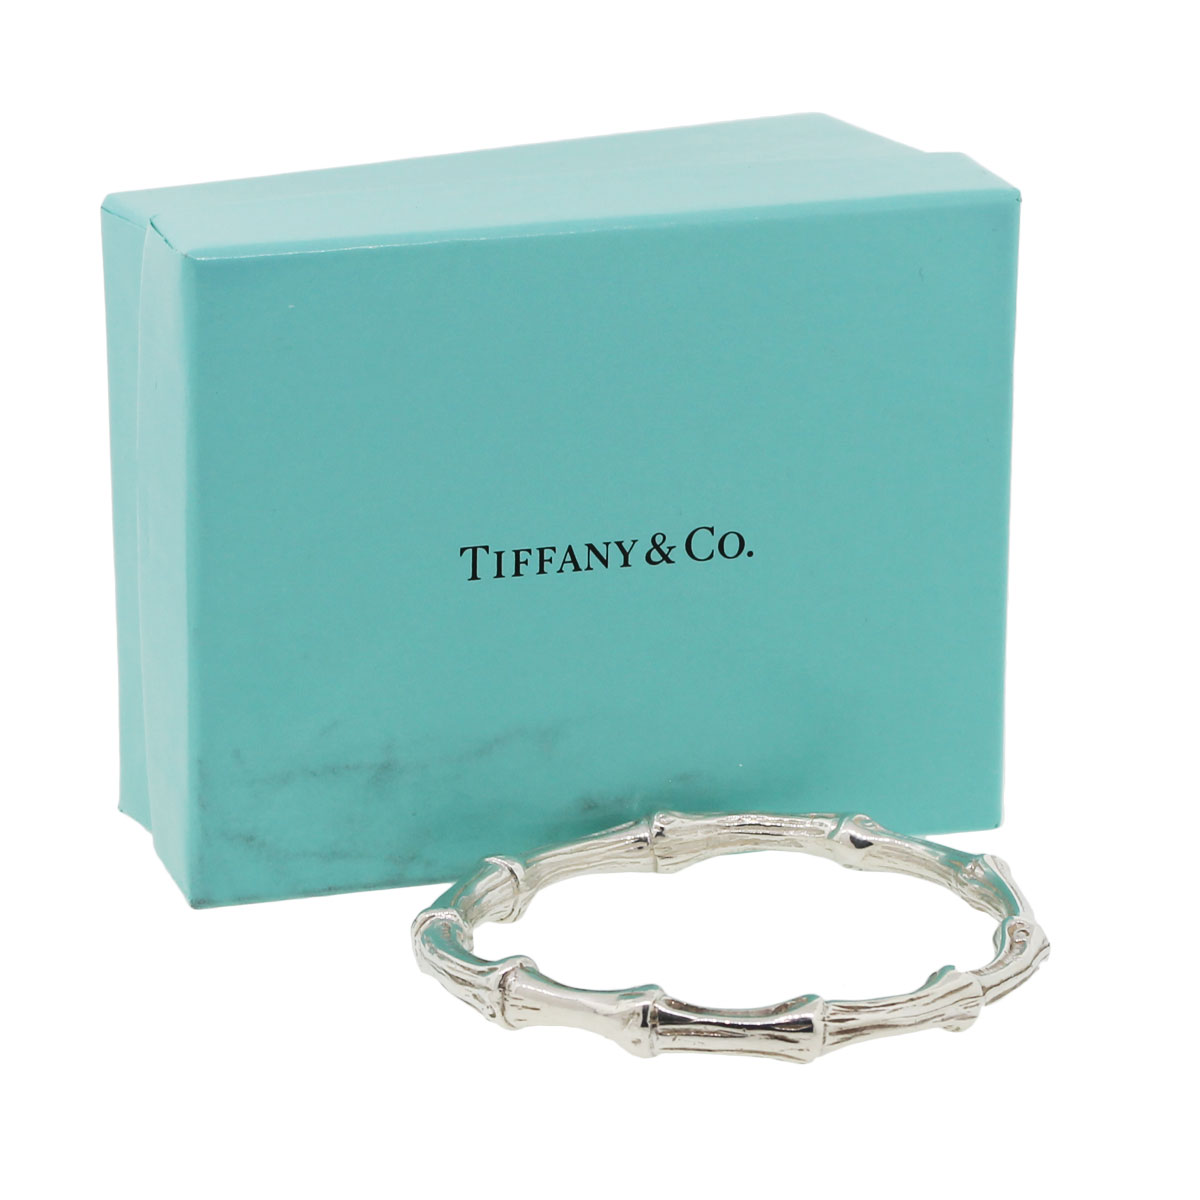 tiffany estate jewelry